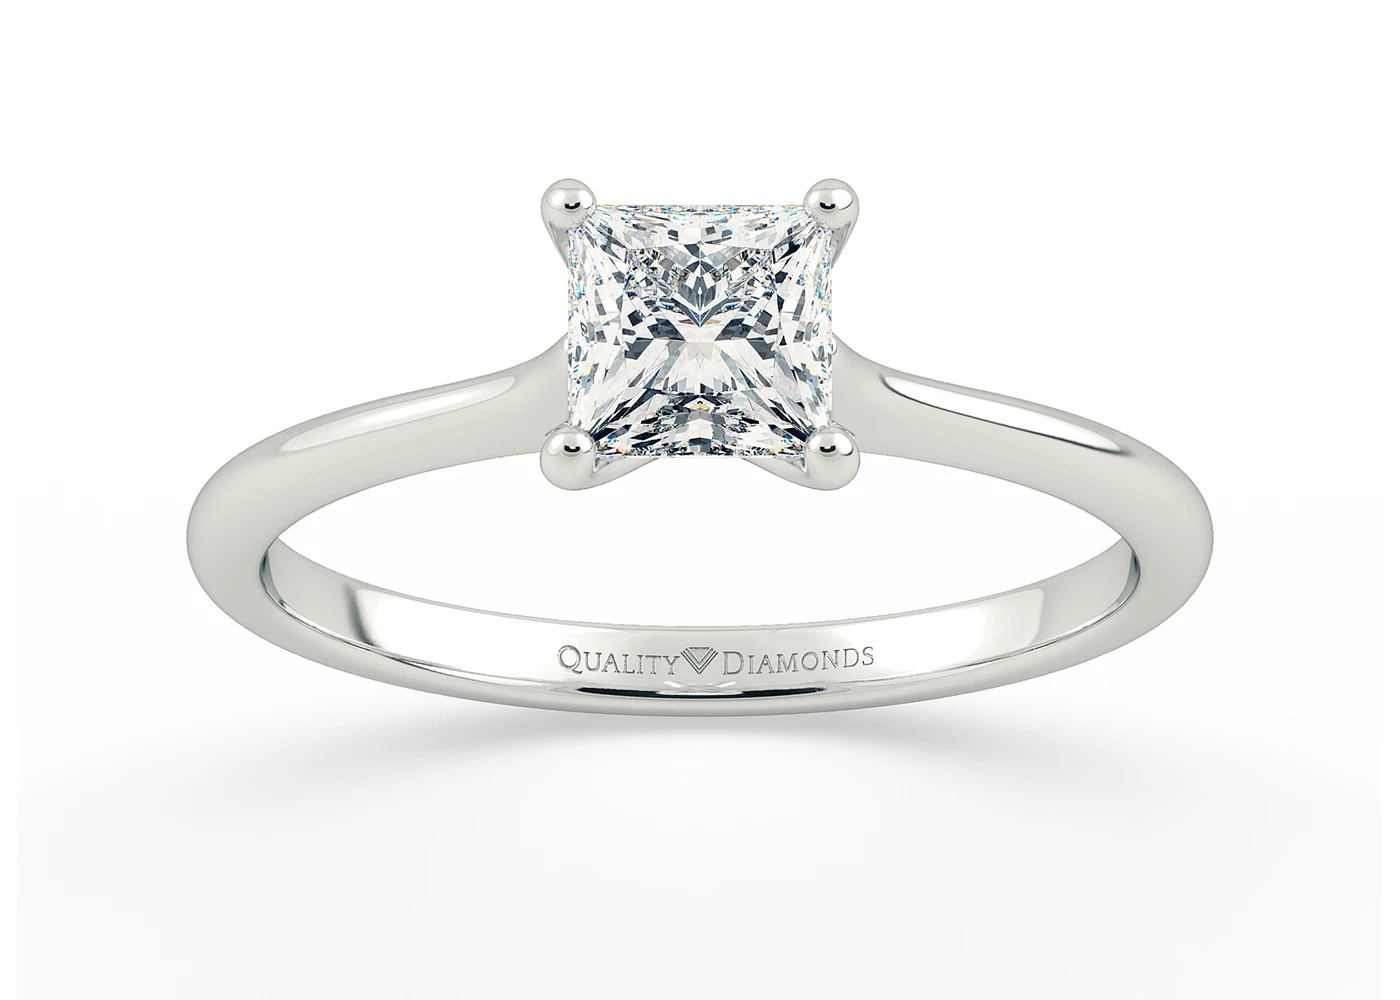 Princess Adamas Diamond Ring in 18K White Gold